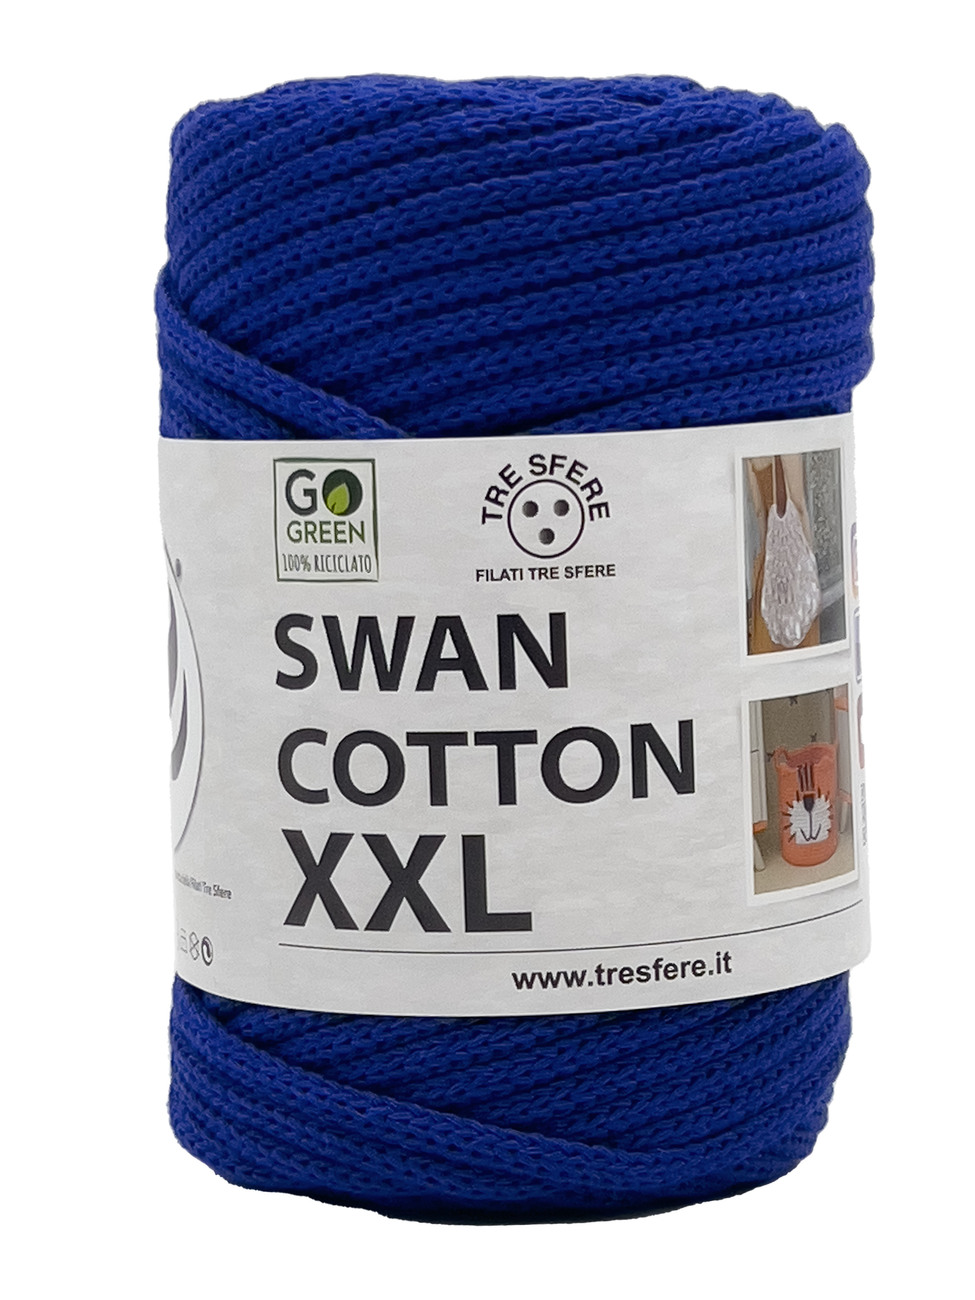 CORDINO SWAN COTTON XXL 250 grammi - Bluette